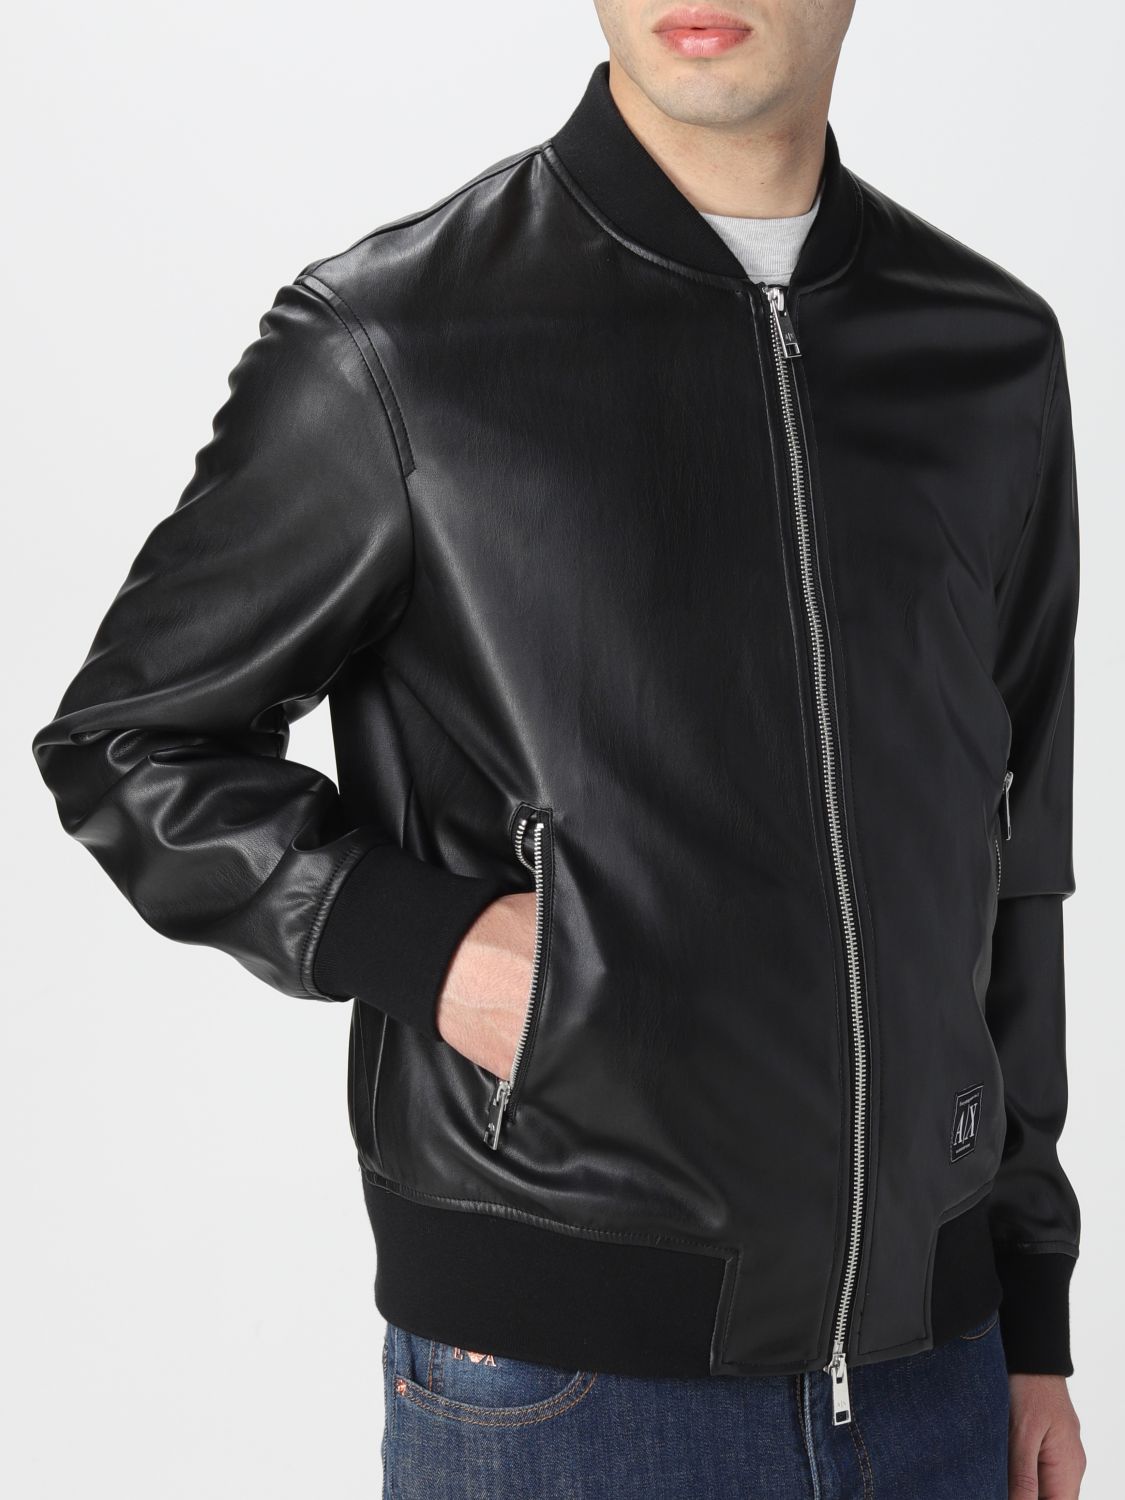 ARMANI EXCHANGE: synthetic leather bomber jacket - Black | Armani ...